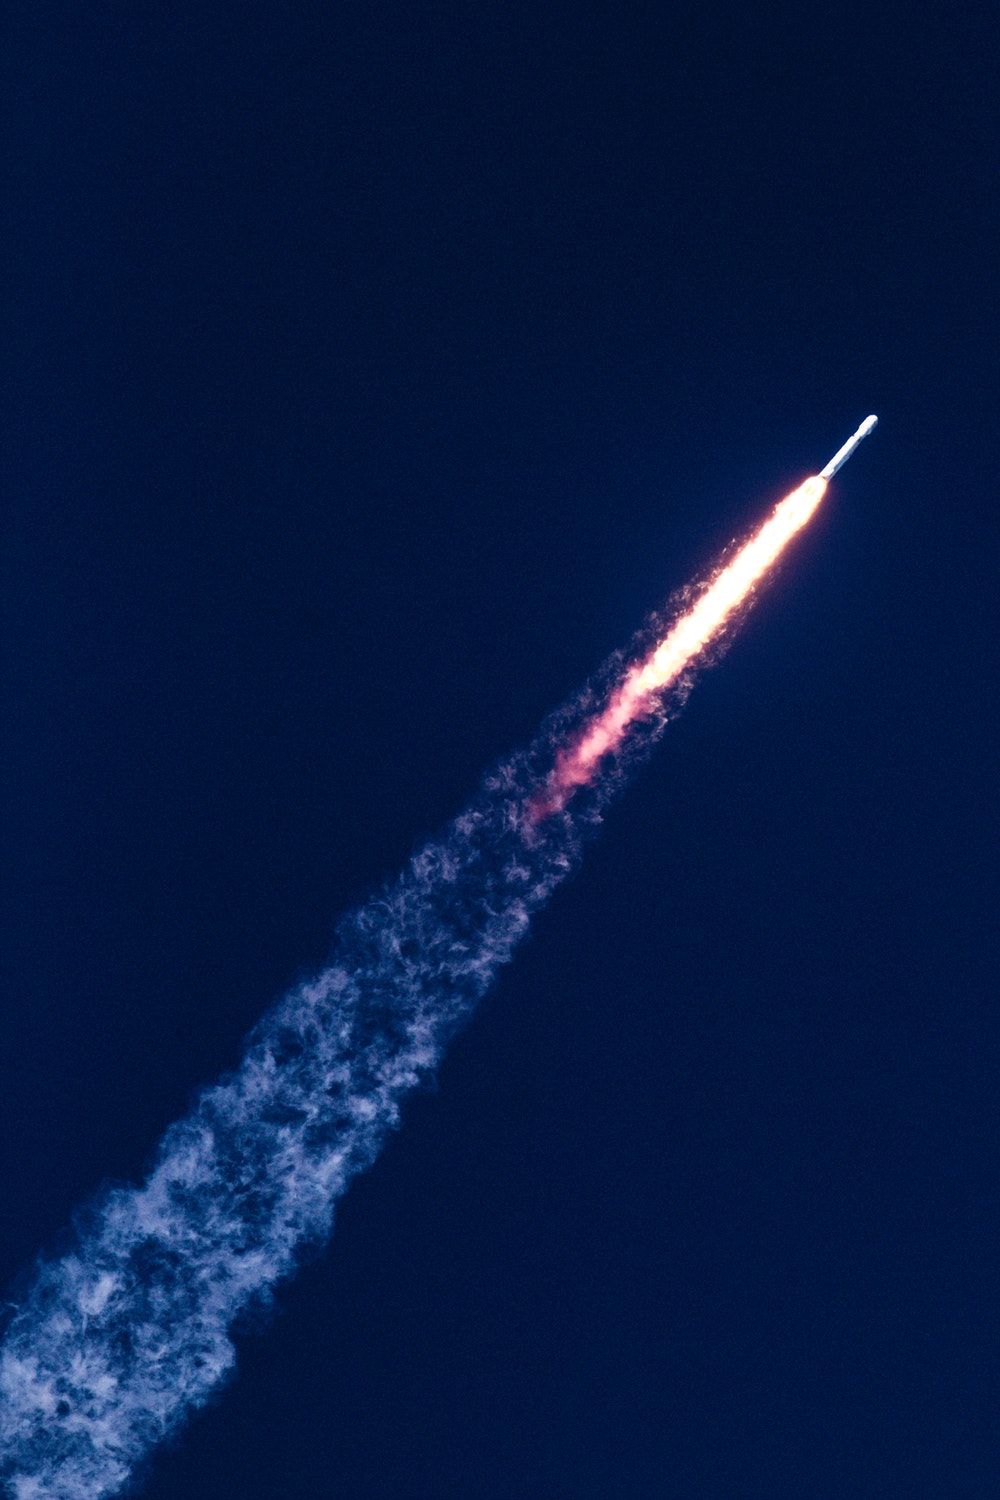 تصویر دیدنی موشک پرتاب شده در آسمان با کیفیت فول اچ دی 